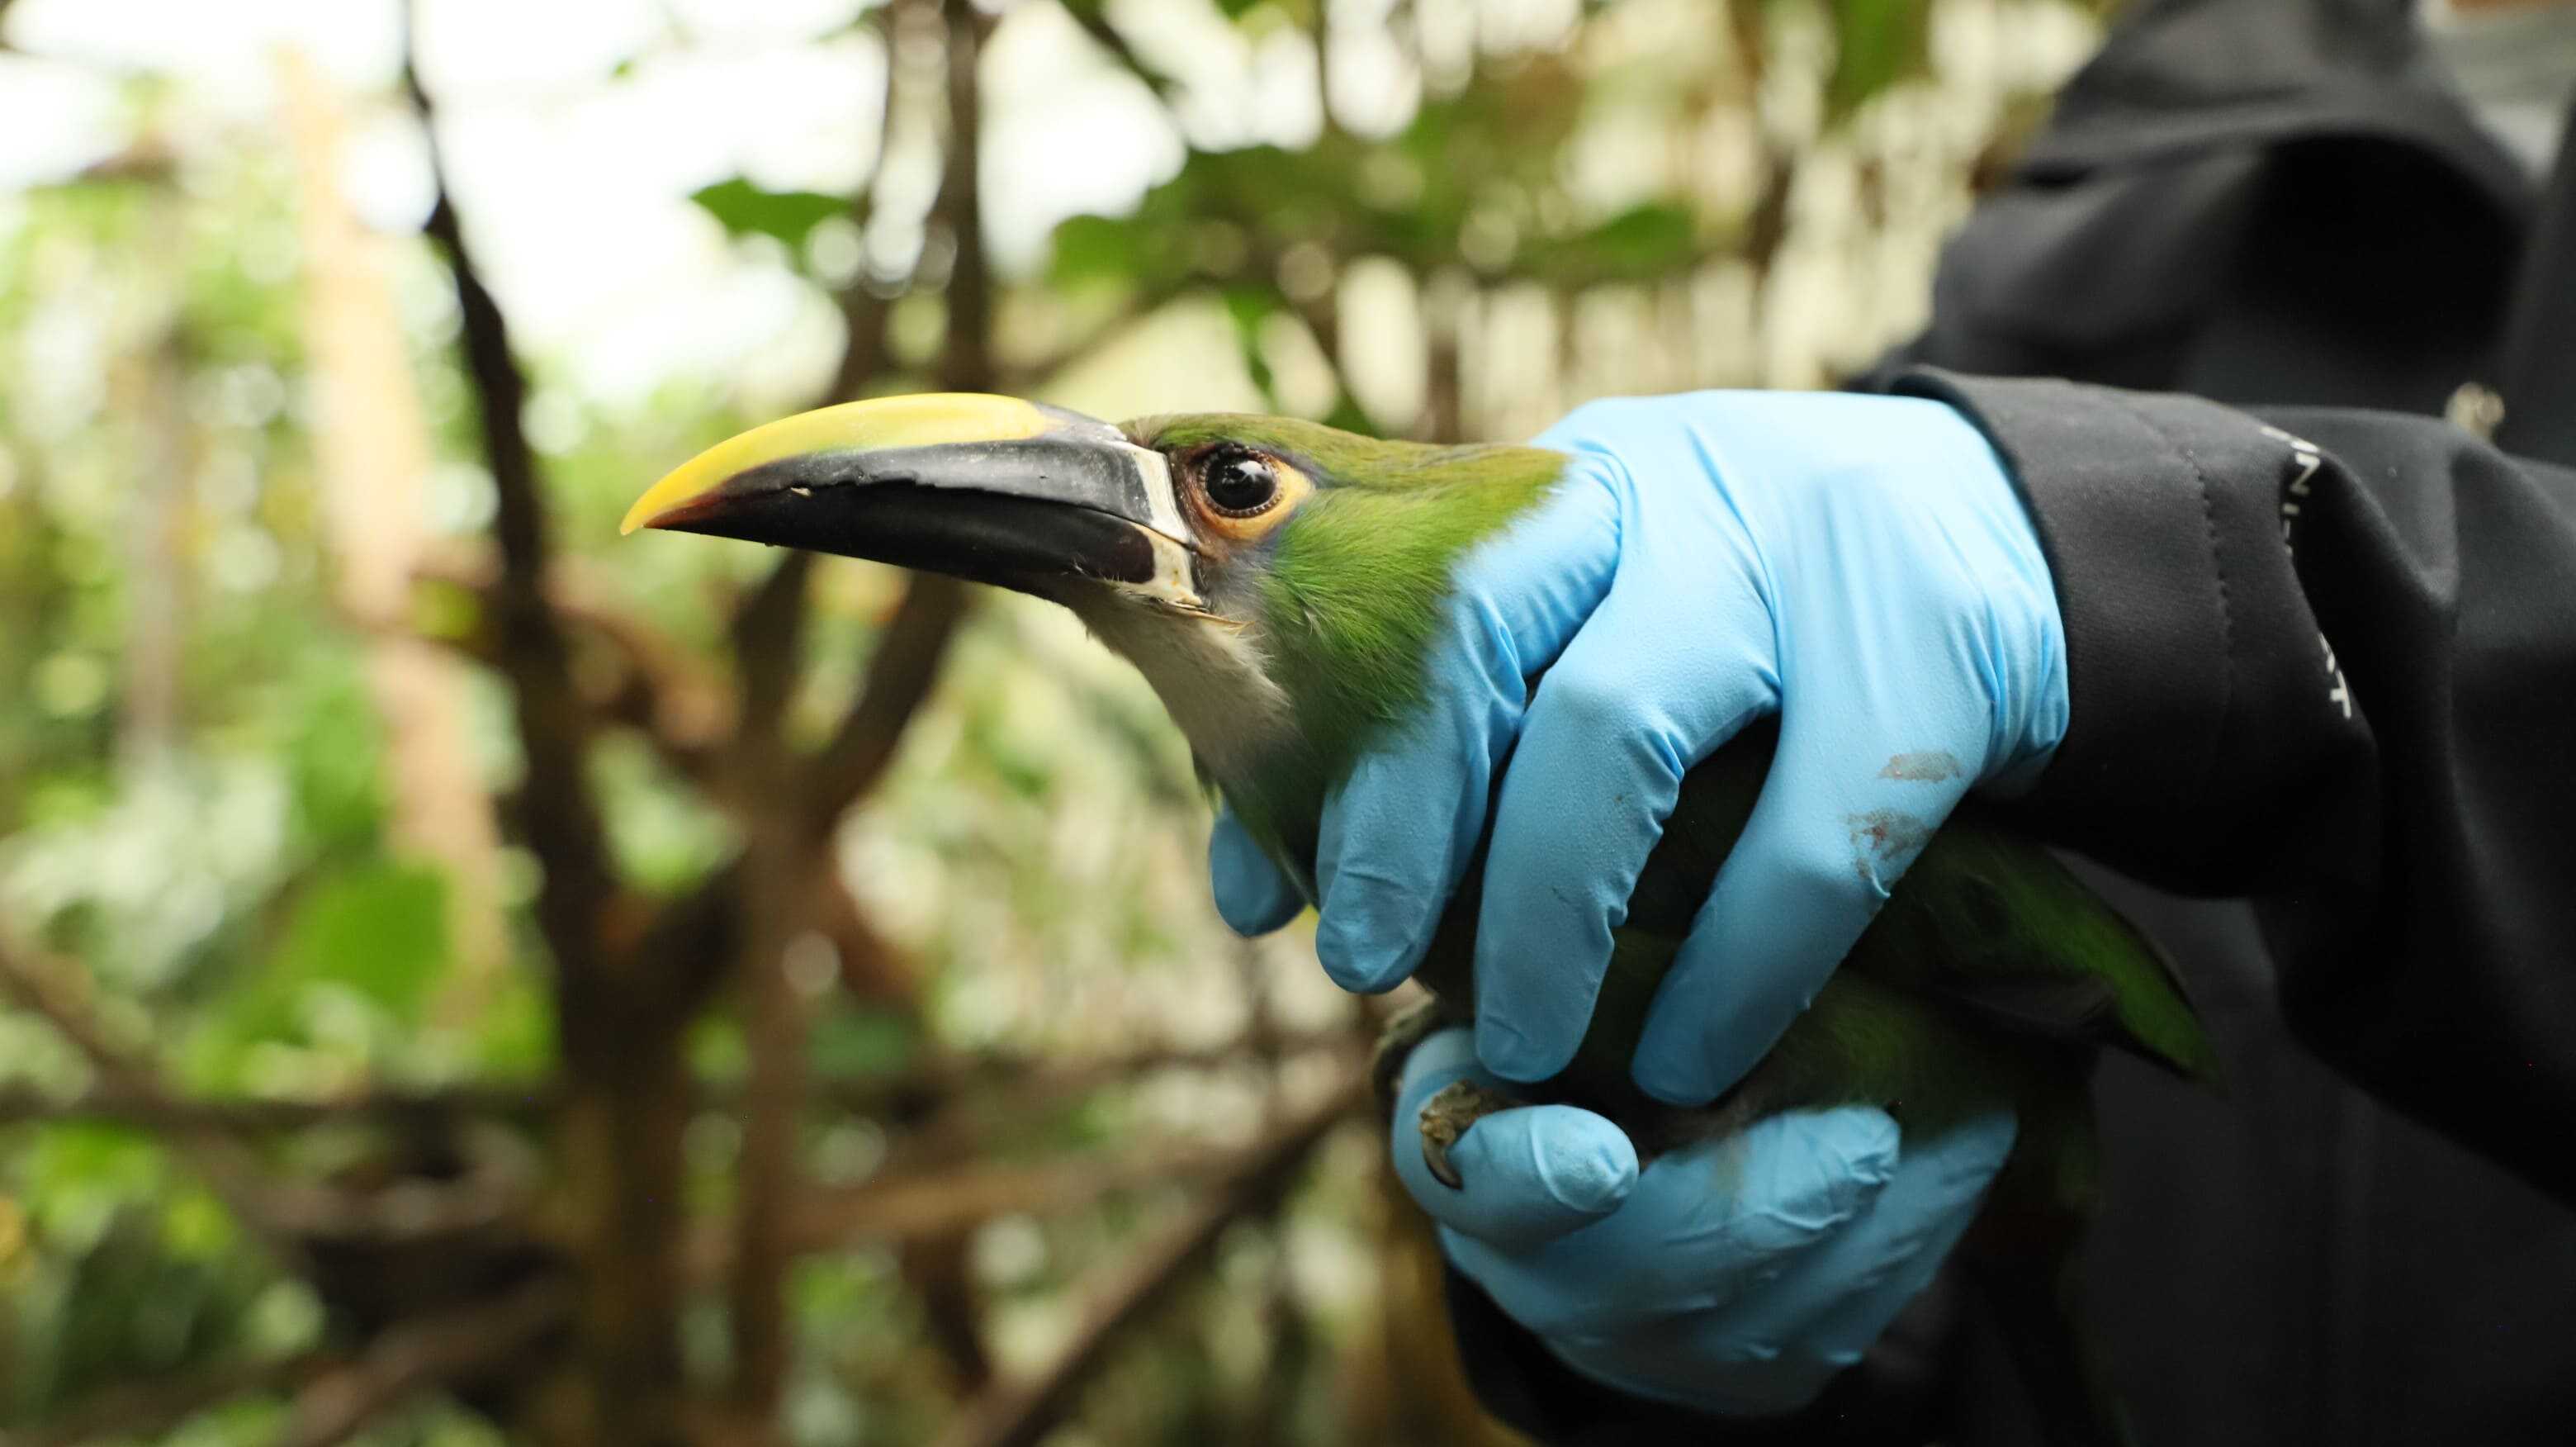 Esta ave, conocida como tucán esmeralda, fue reubicada en el Bioparque La Reserva. En el lugar continuará su proceso de rehabilitación. Foto: Comunicaciones de la Secretaría de Ambiente